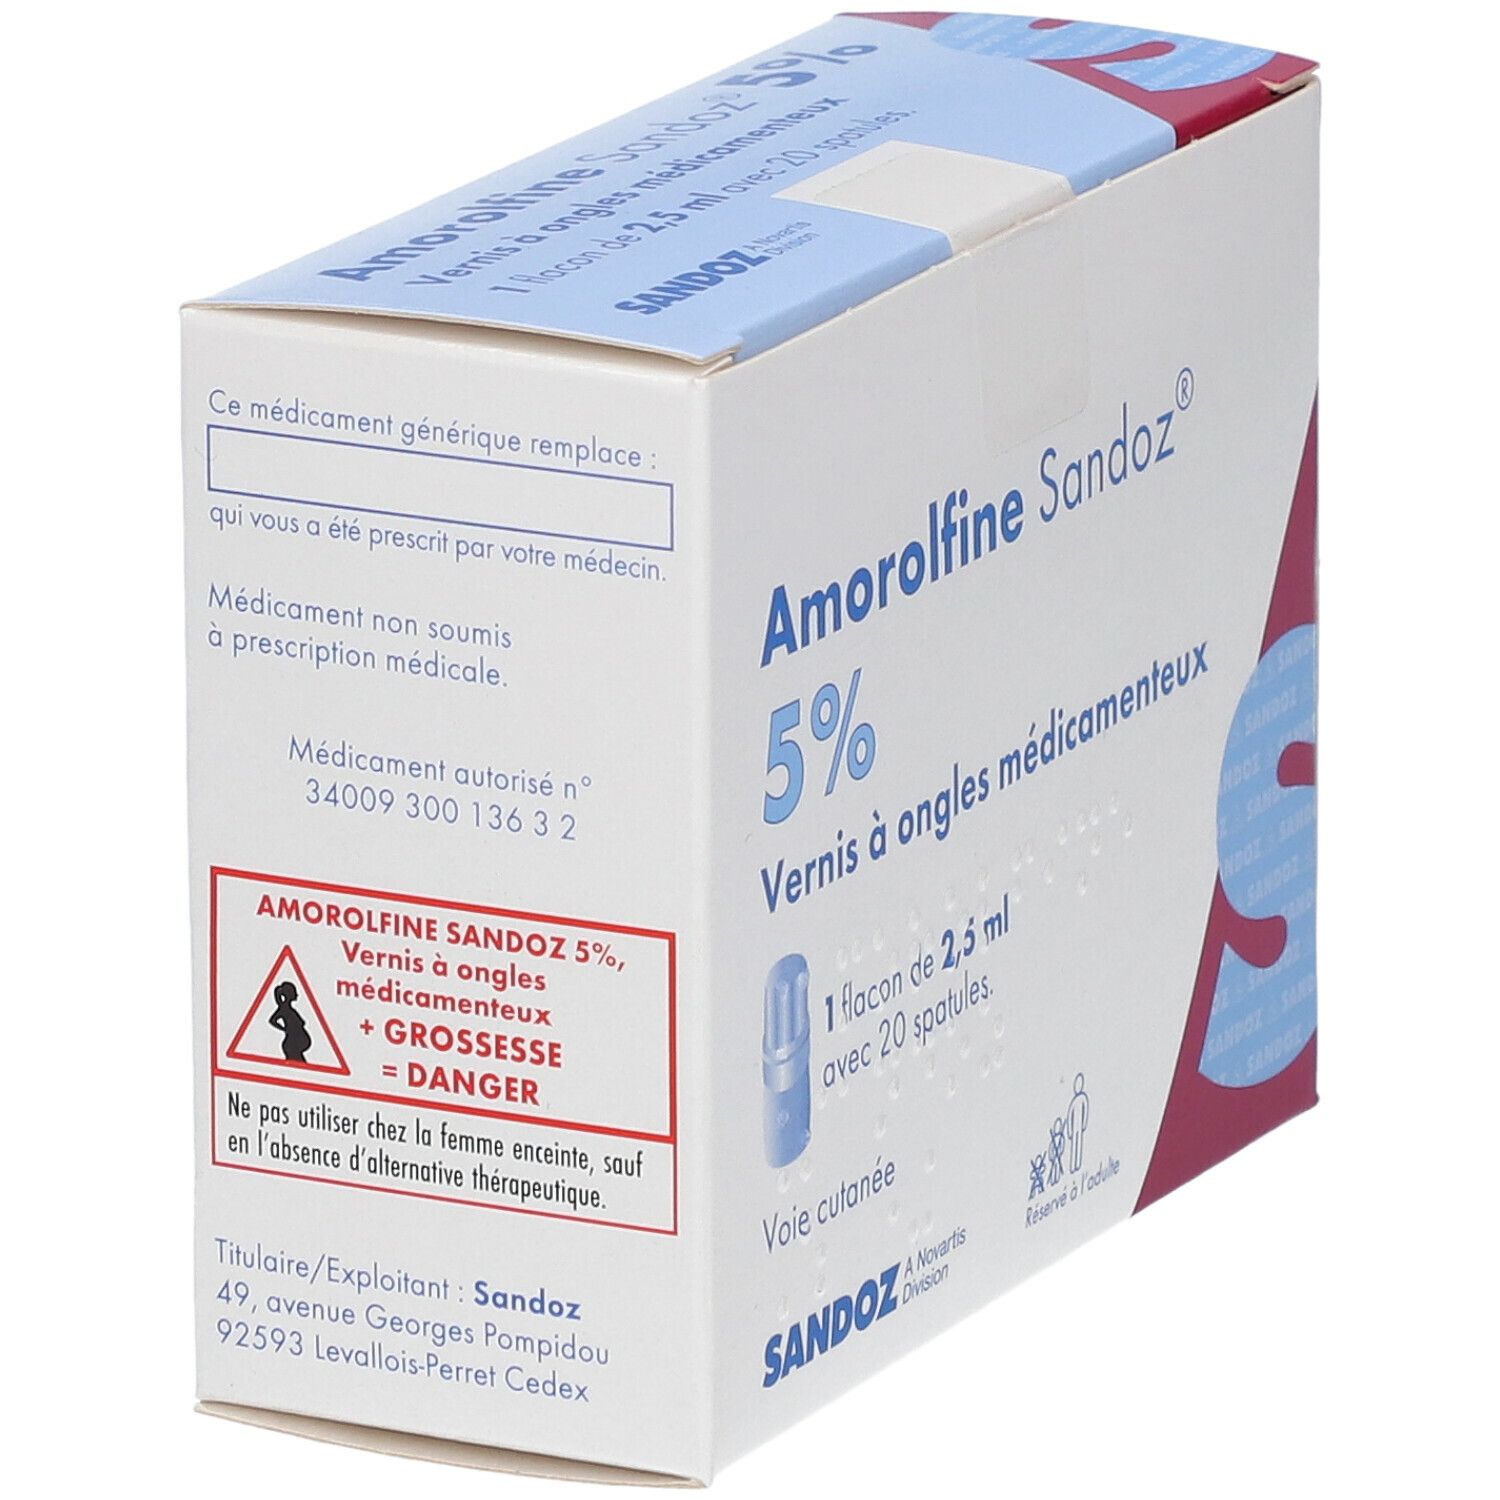 Amorolfine Sandoz® 5%